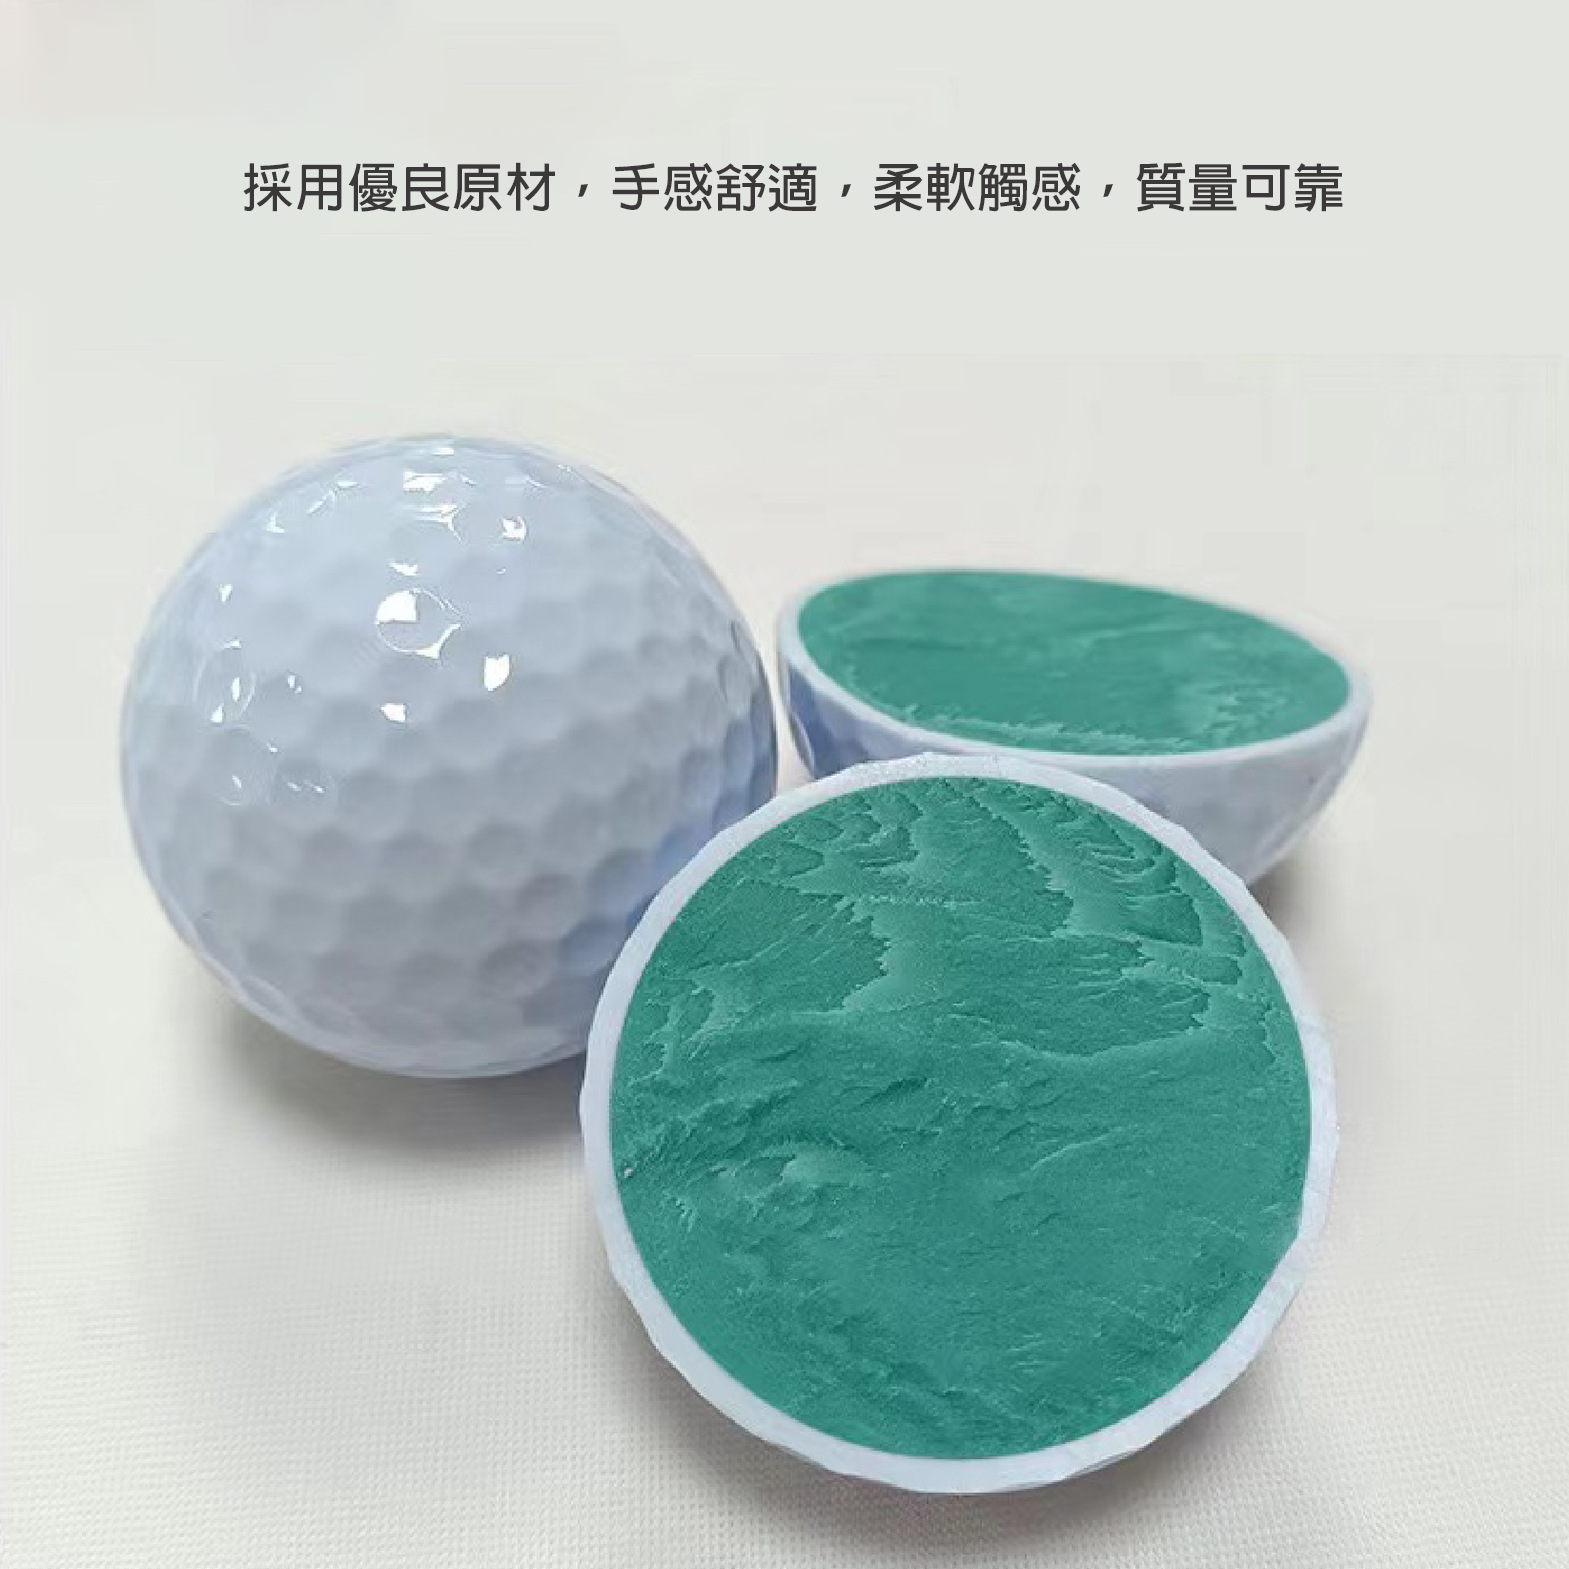 『客製贈品』訂製高爾夫球 |  客製化禮品、禮贈品專家